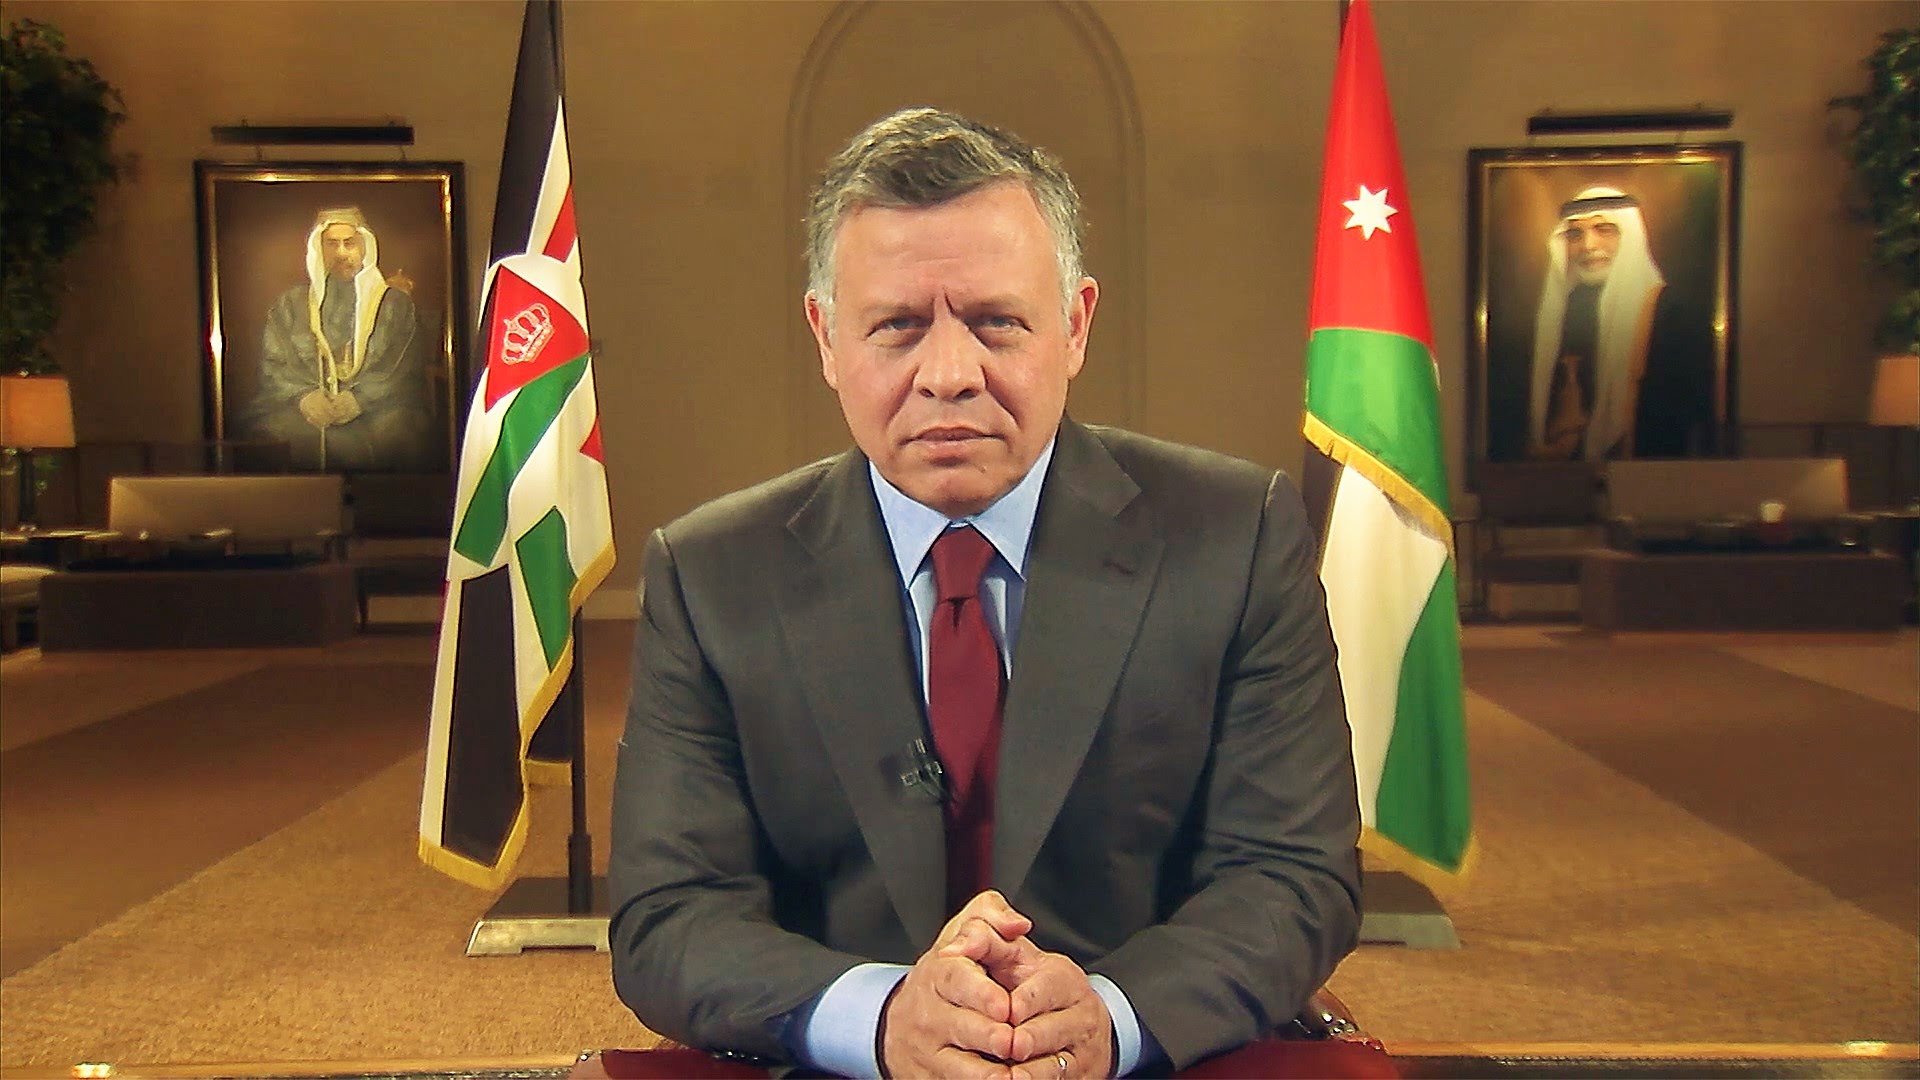 ملك الأردن يغادر الجزائر بعد اختتام زيارته الرسمية